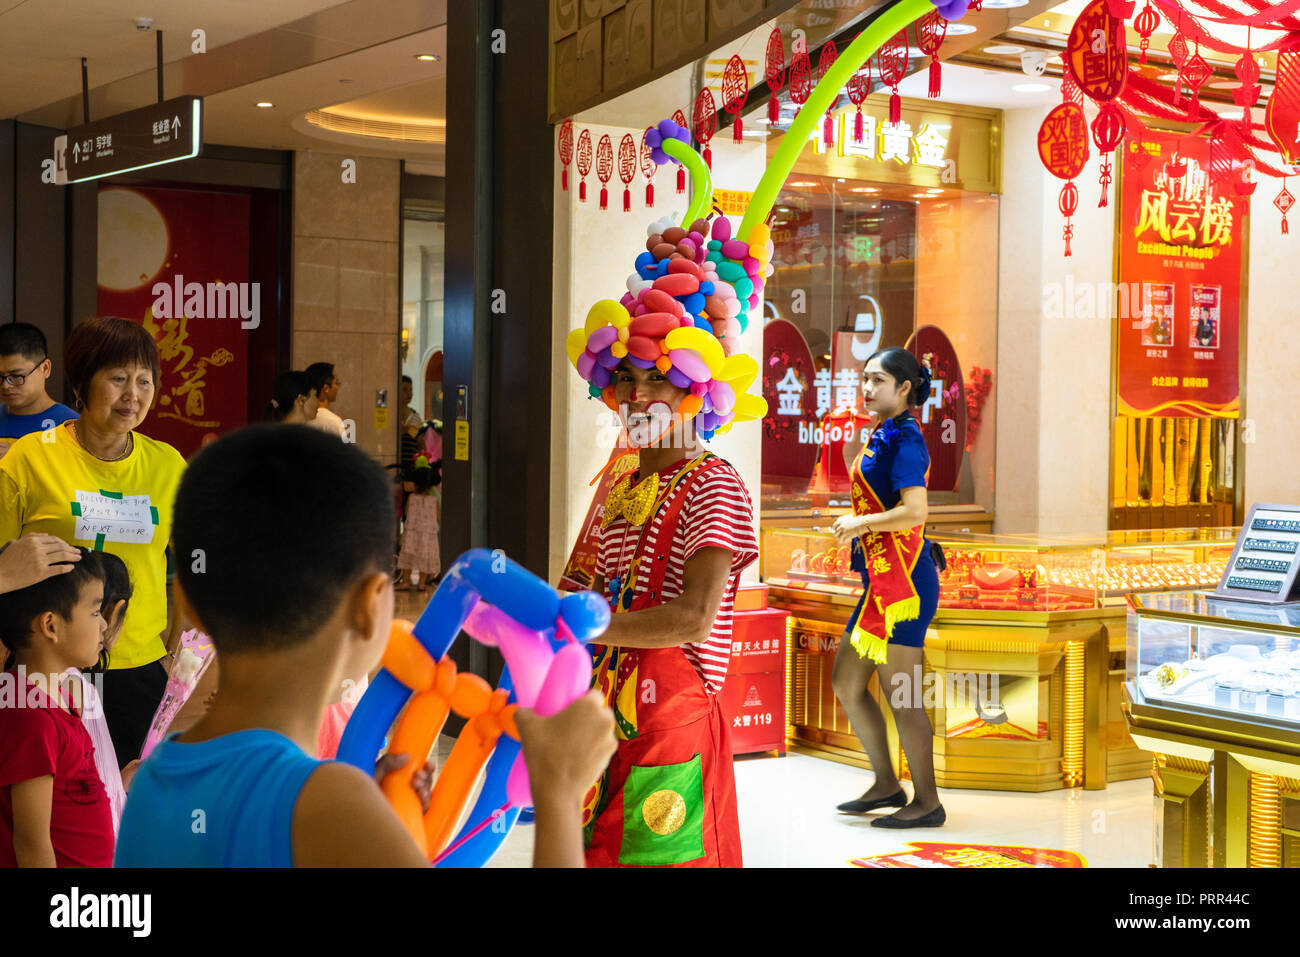 Balloon fight entre garçon et clown au centre commercial en Chine Banque D'Images